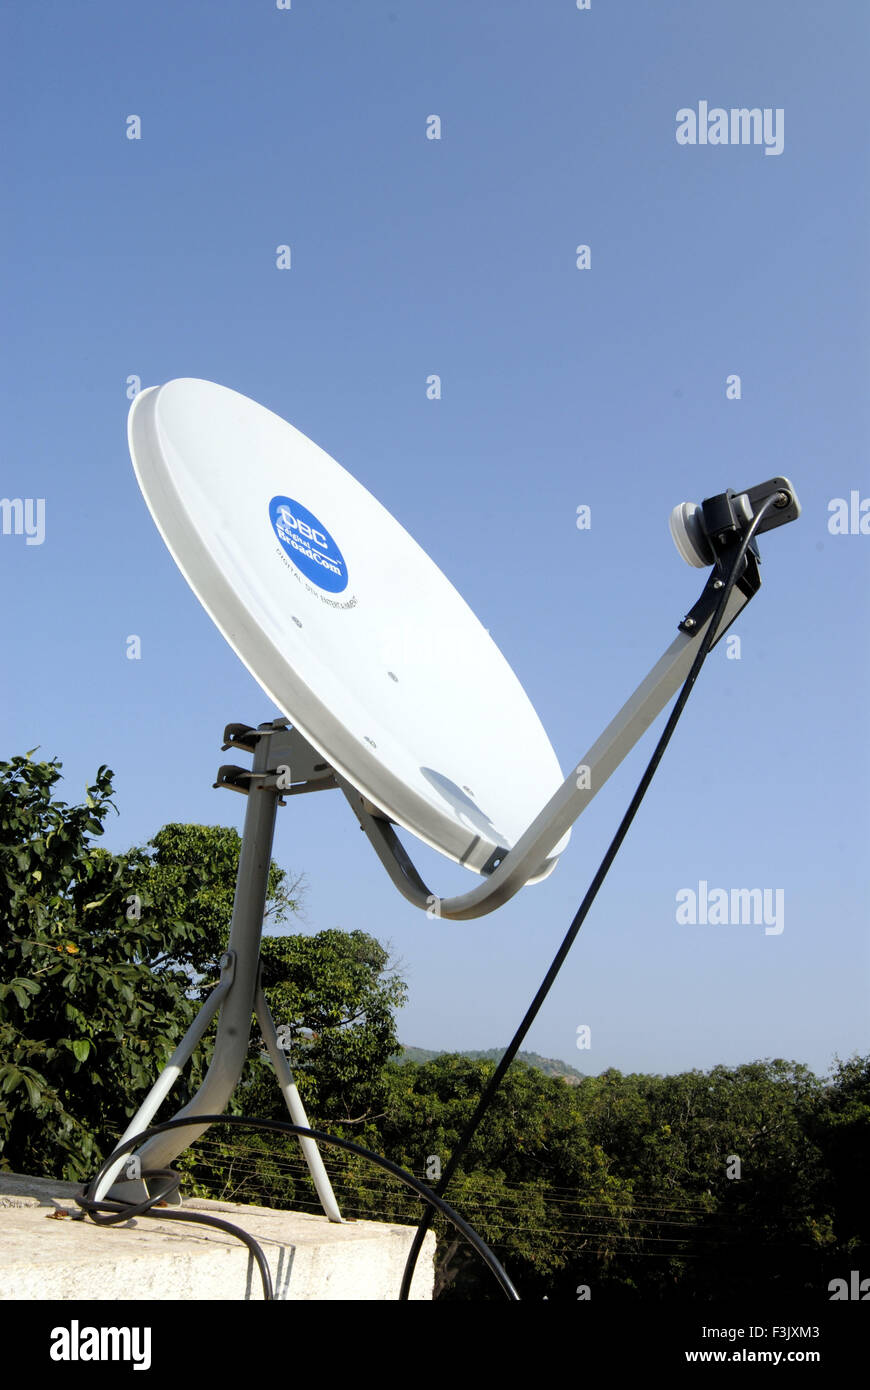 Antena parabólica terraza casa de pueblo verde hogar digital satélite canales de televisión DTH Harihareshwar Raigad india Fotografía de stock - Alamy